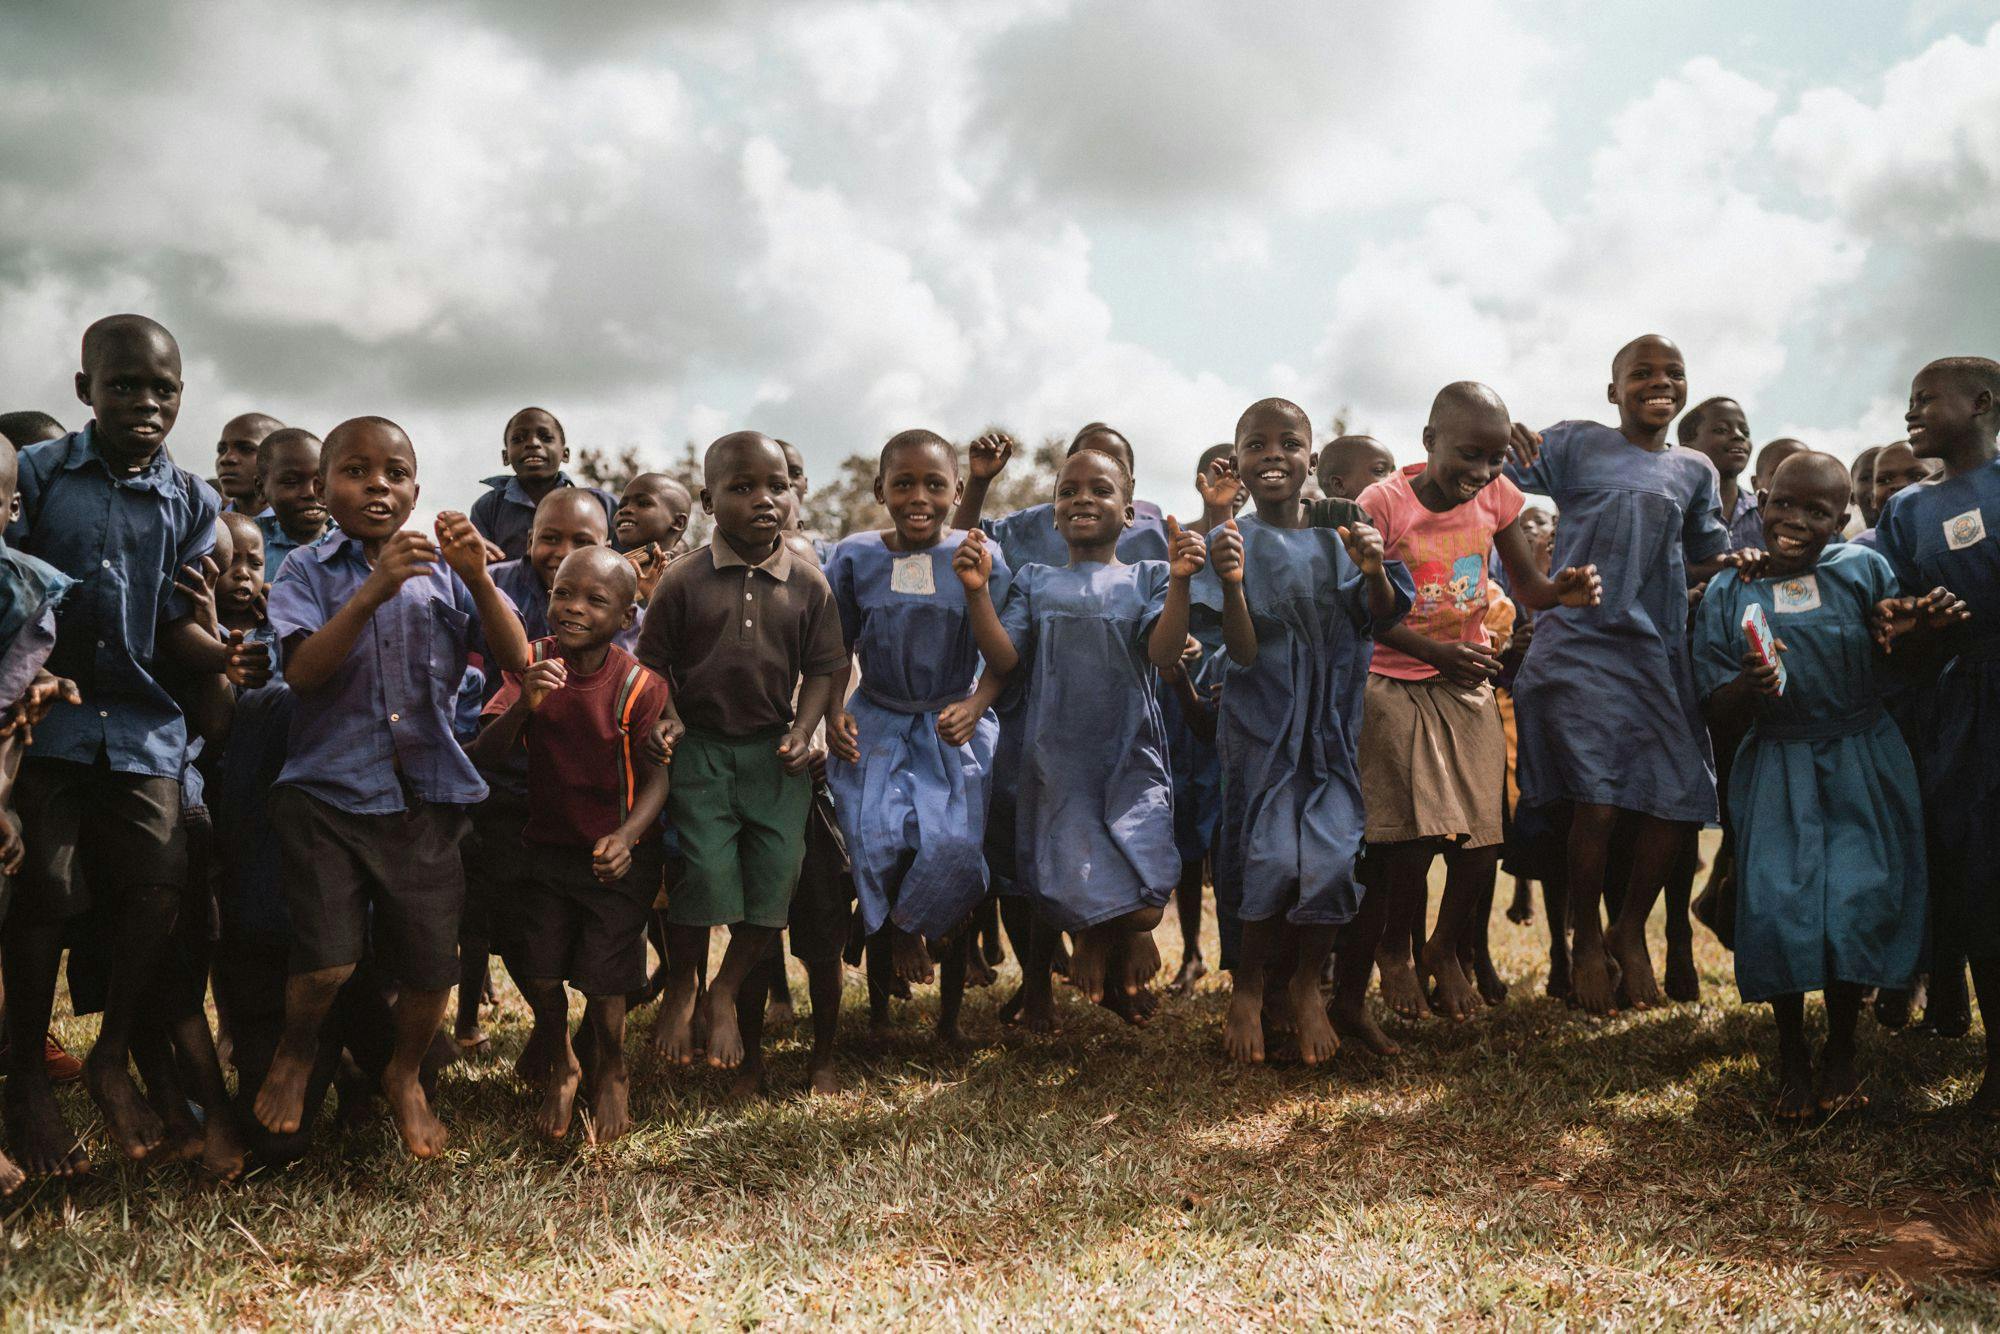 The beautiful children of Uganda!